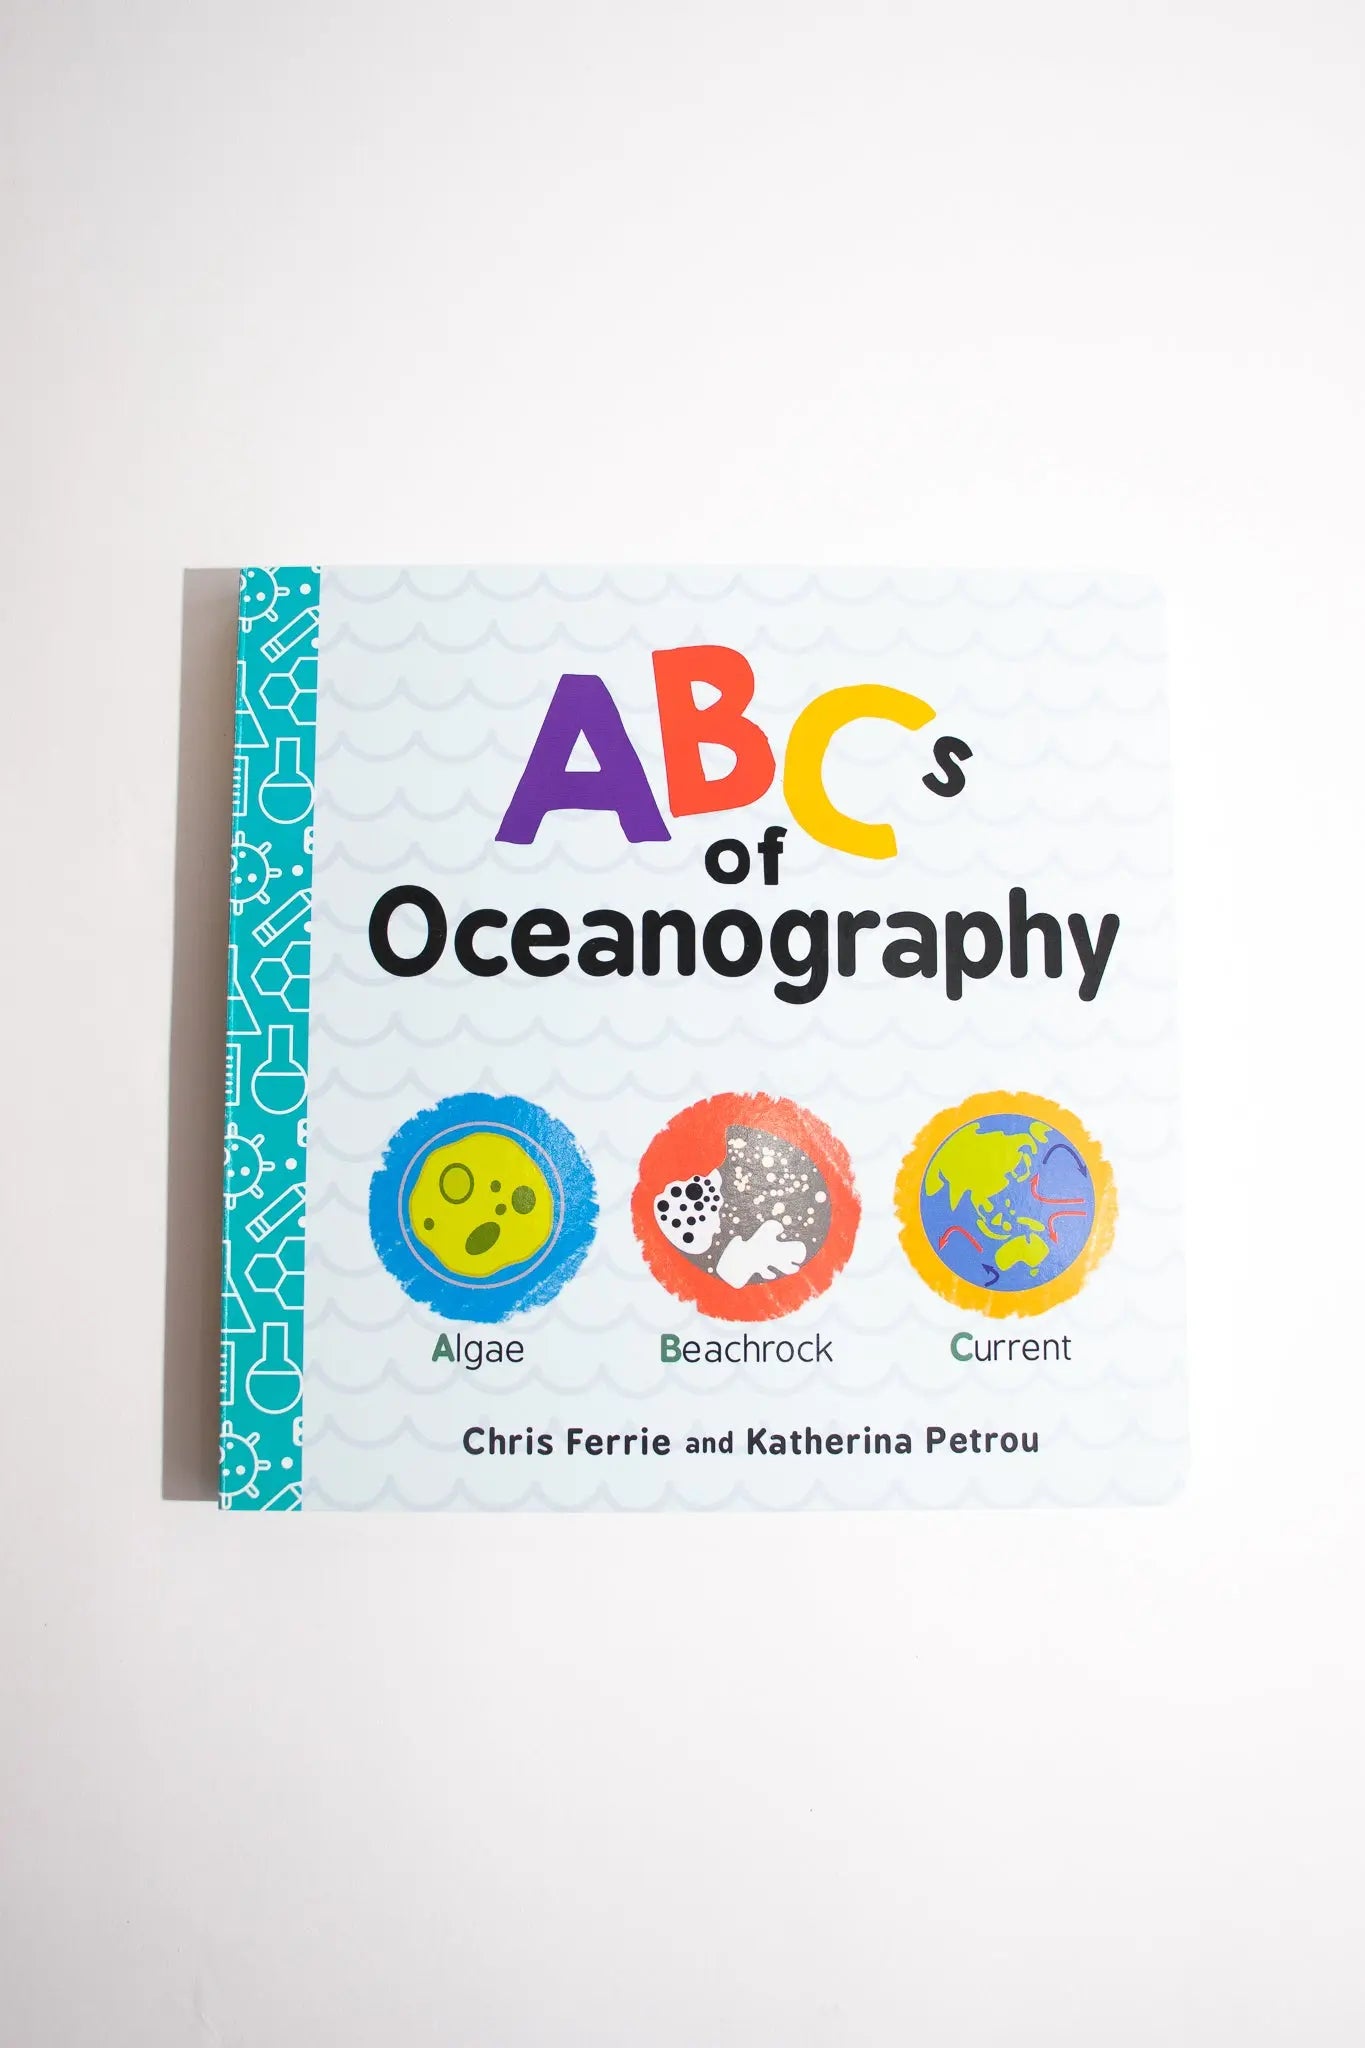 ABC's of Oceanography